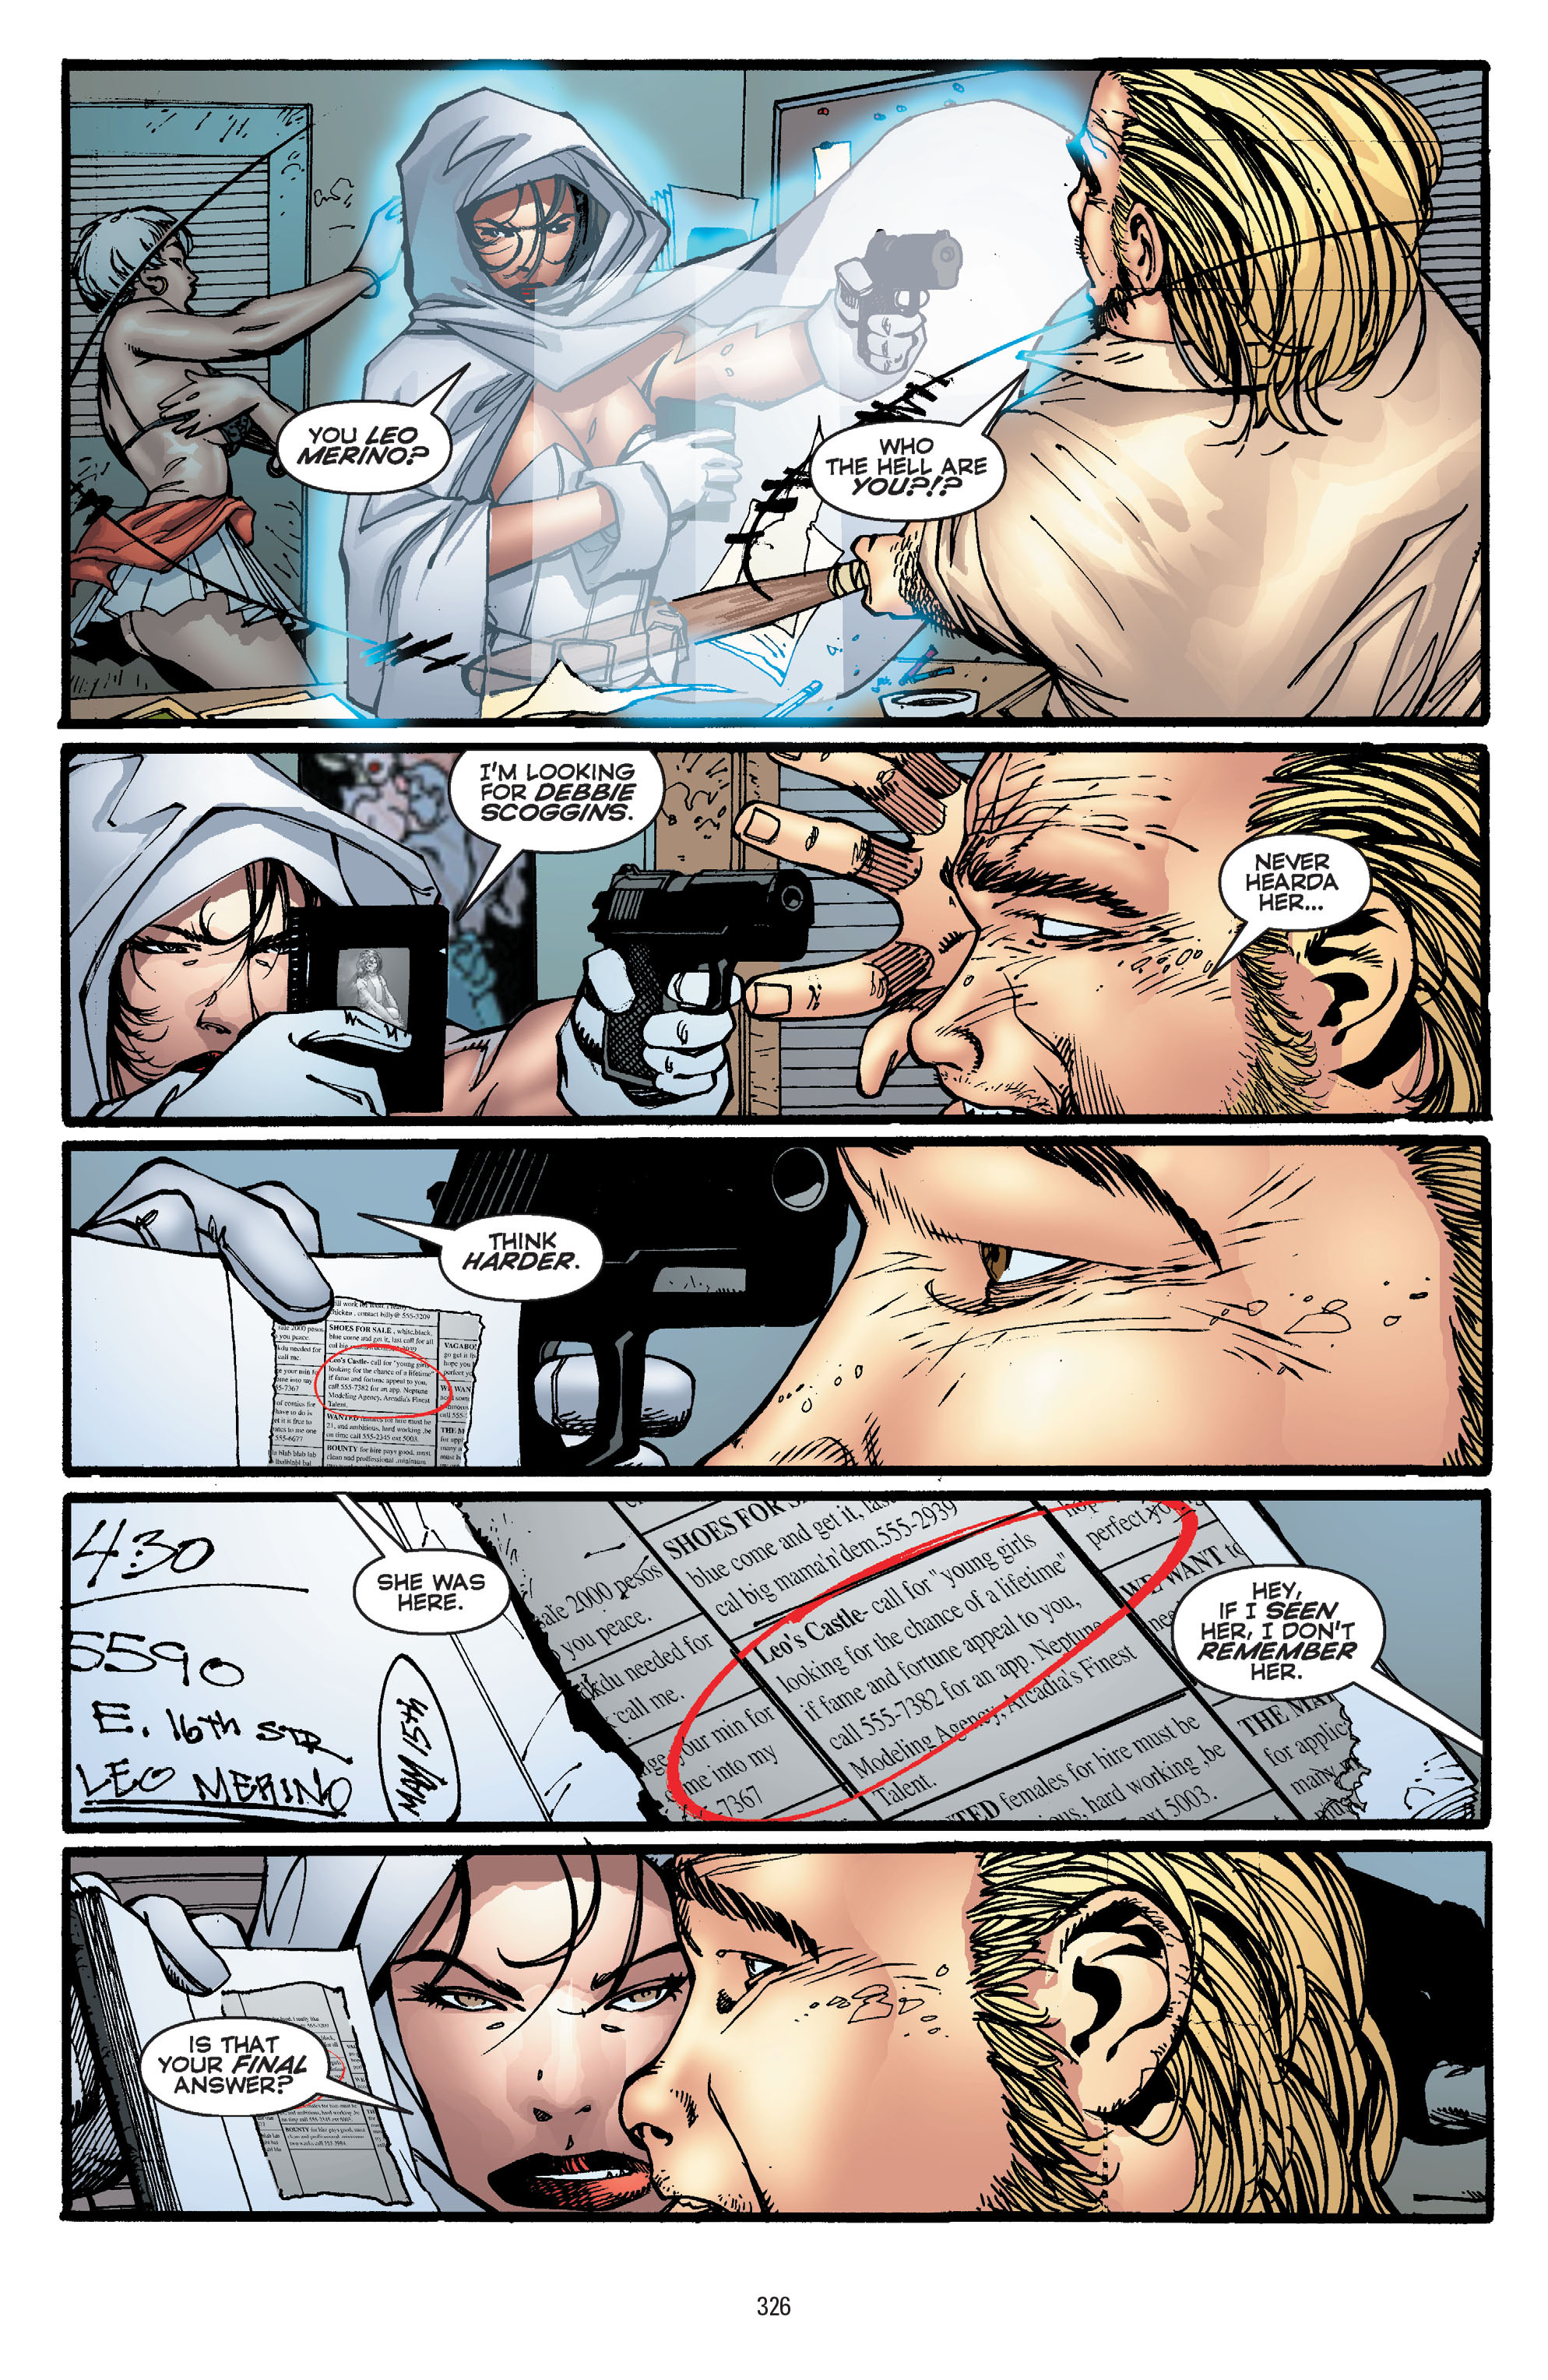 DC Comics/Dark Horse Comics: Justice League Full #1 - English 316